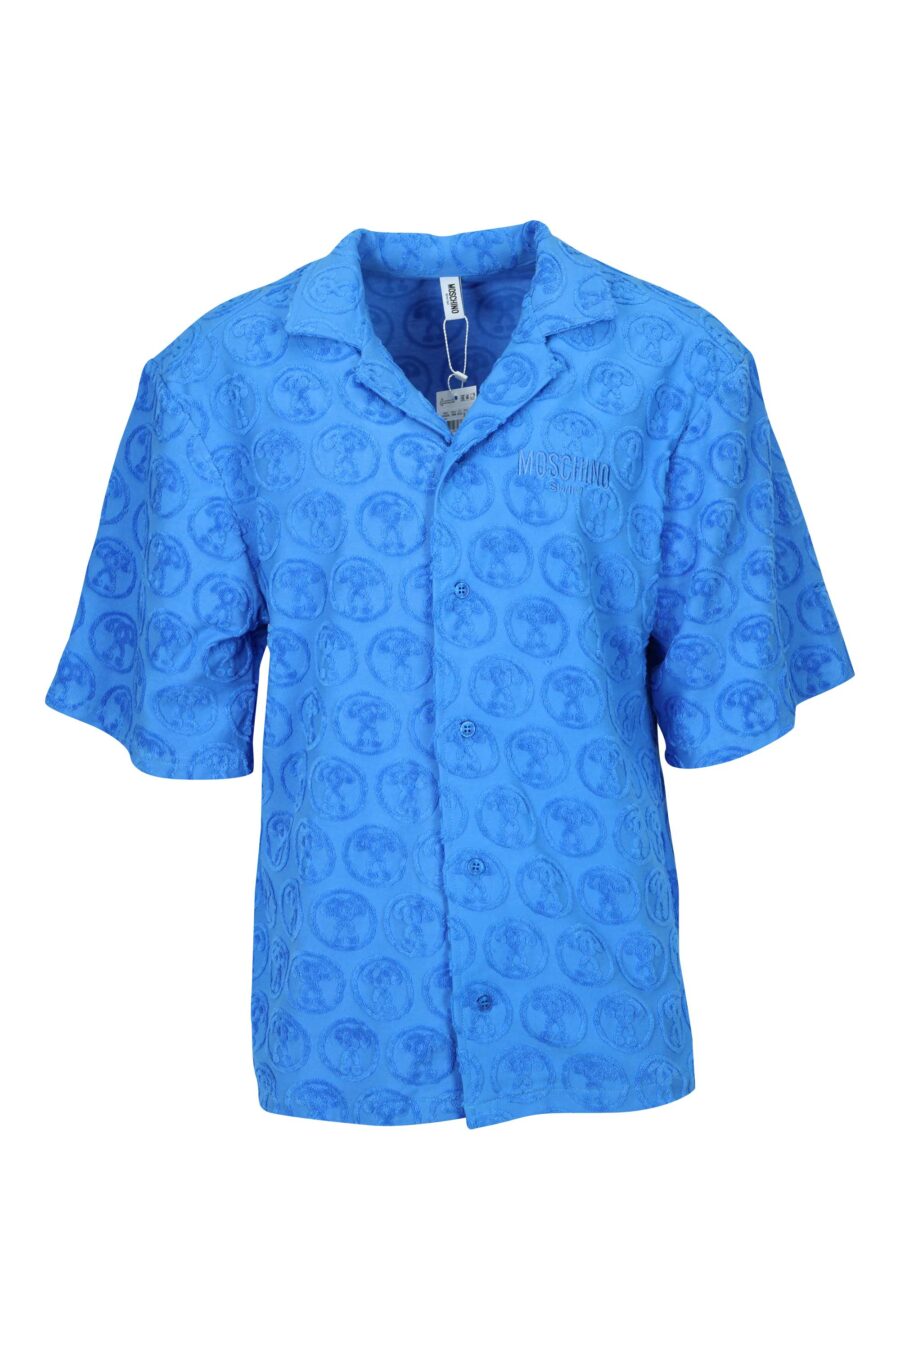 Camisa azul de manga curta com "logótipo por todo o lado" dupla questão - 667113670638